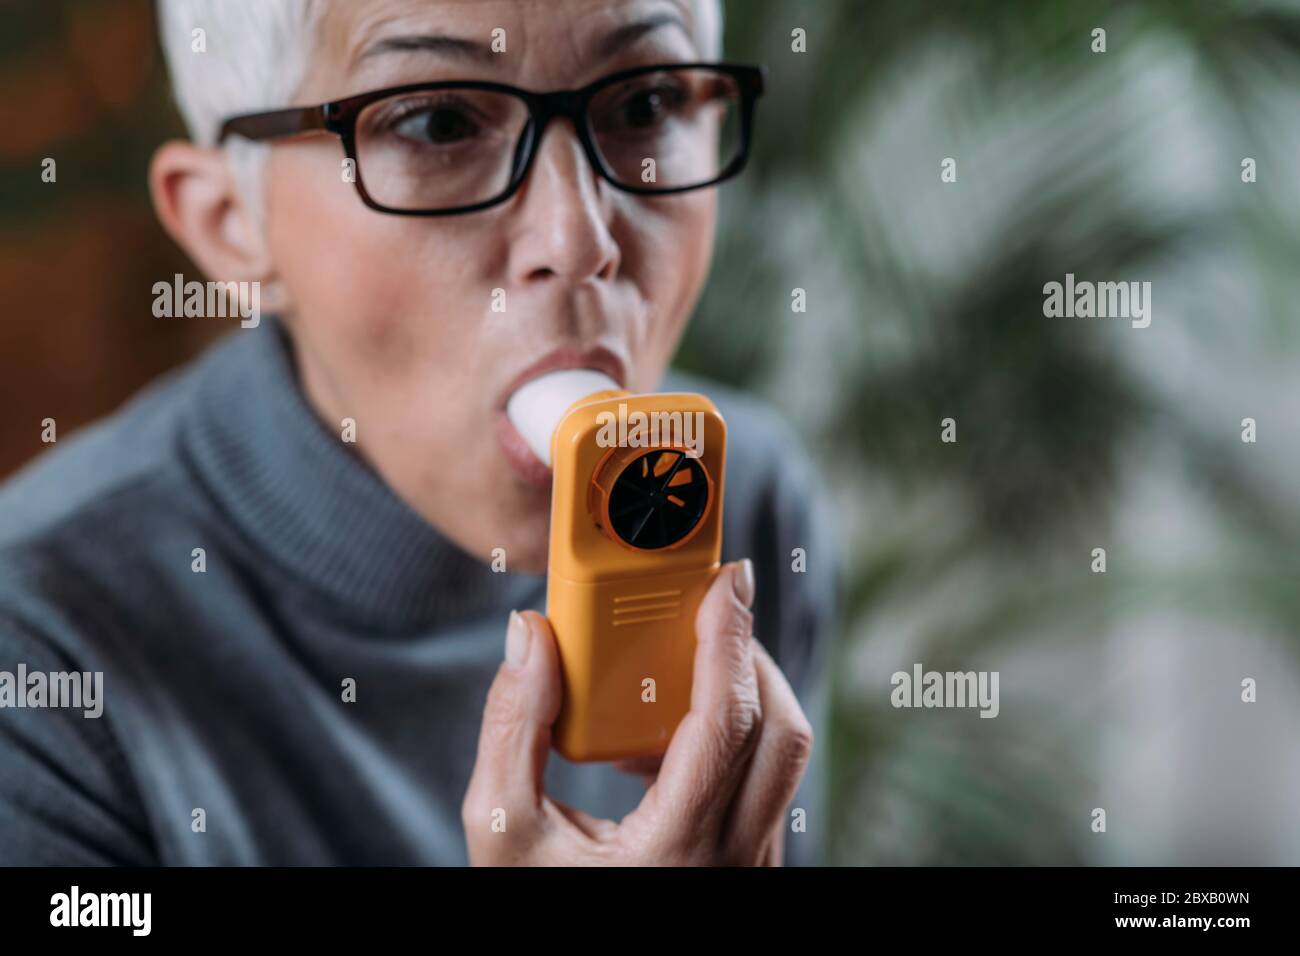 Monitoraggio delle malattie respiratorie con spirometro digitale Foto Stock